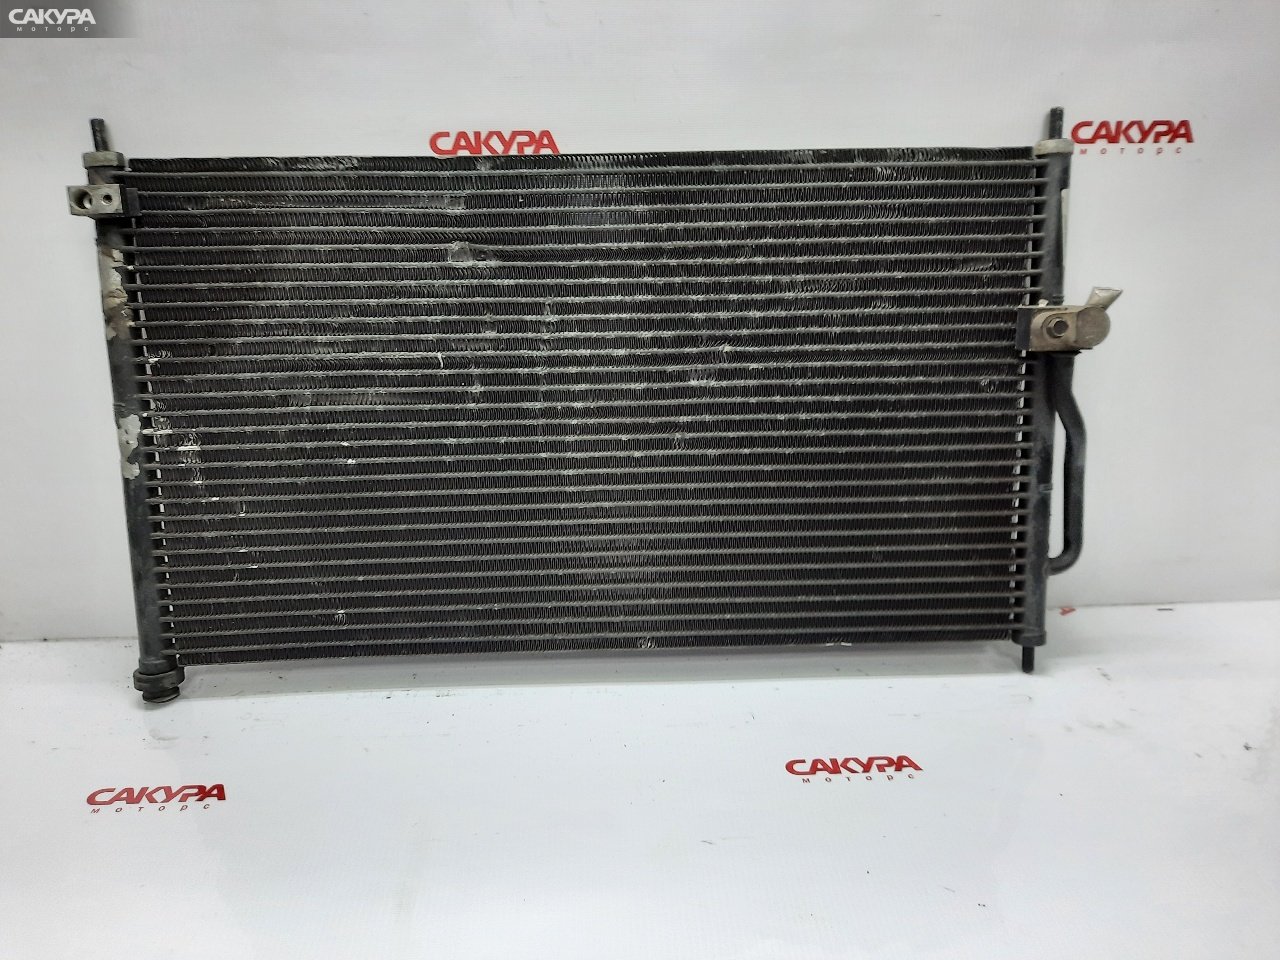 Радиатор кондиционера Honda CR-V RD2 B20B: купить в Сакура Красноярск.